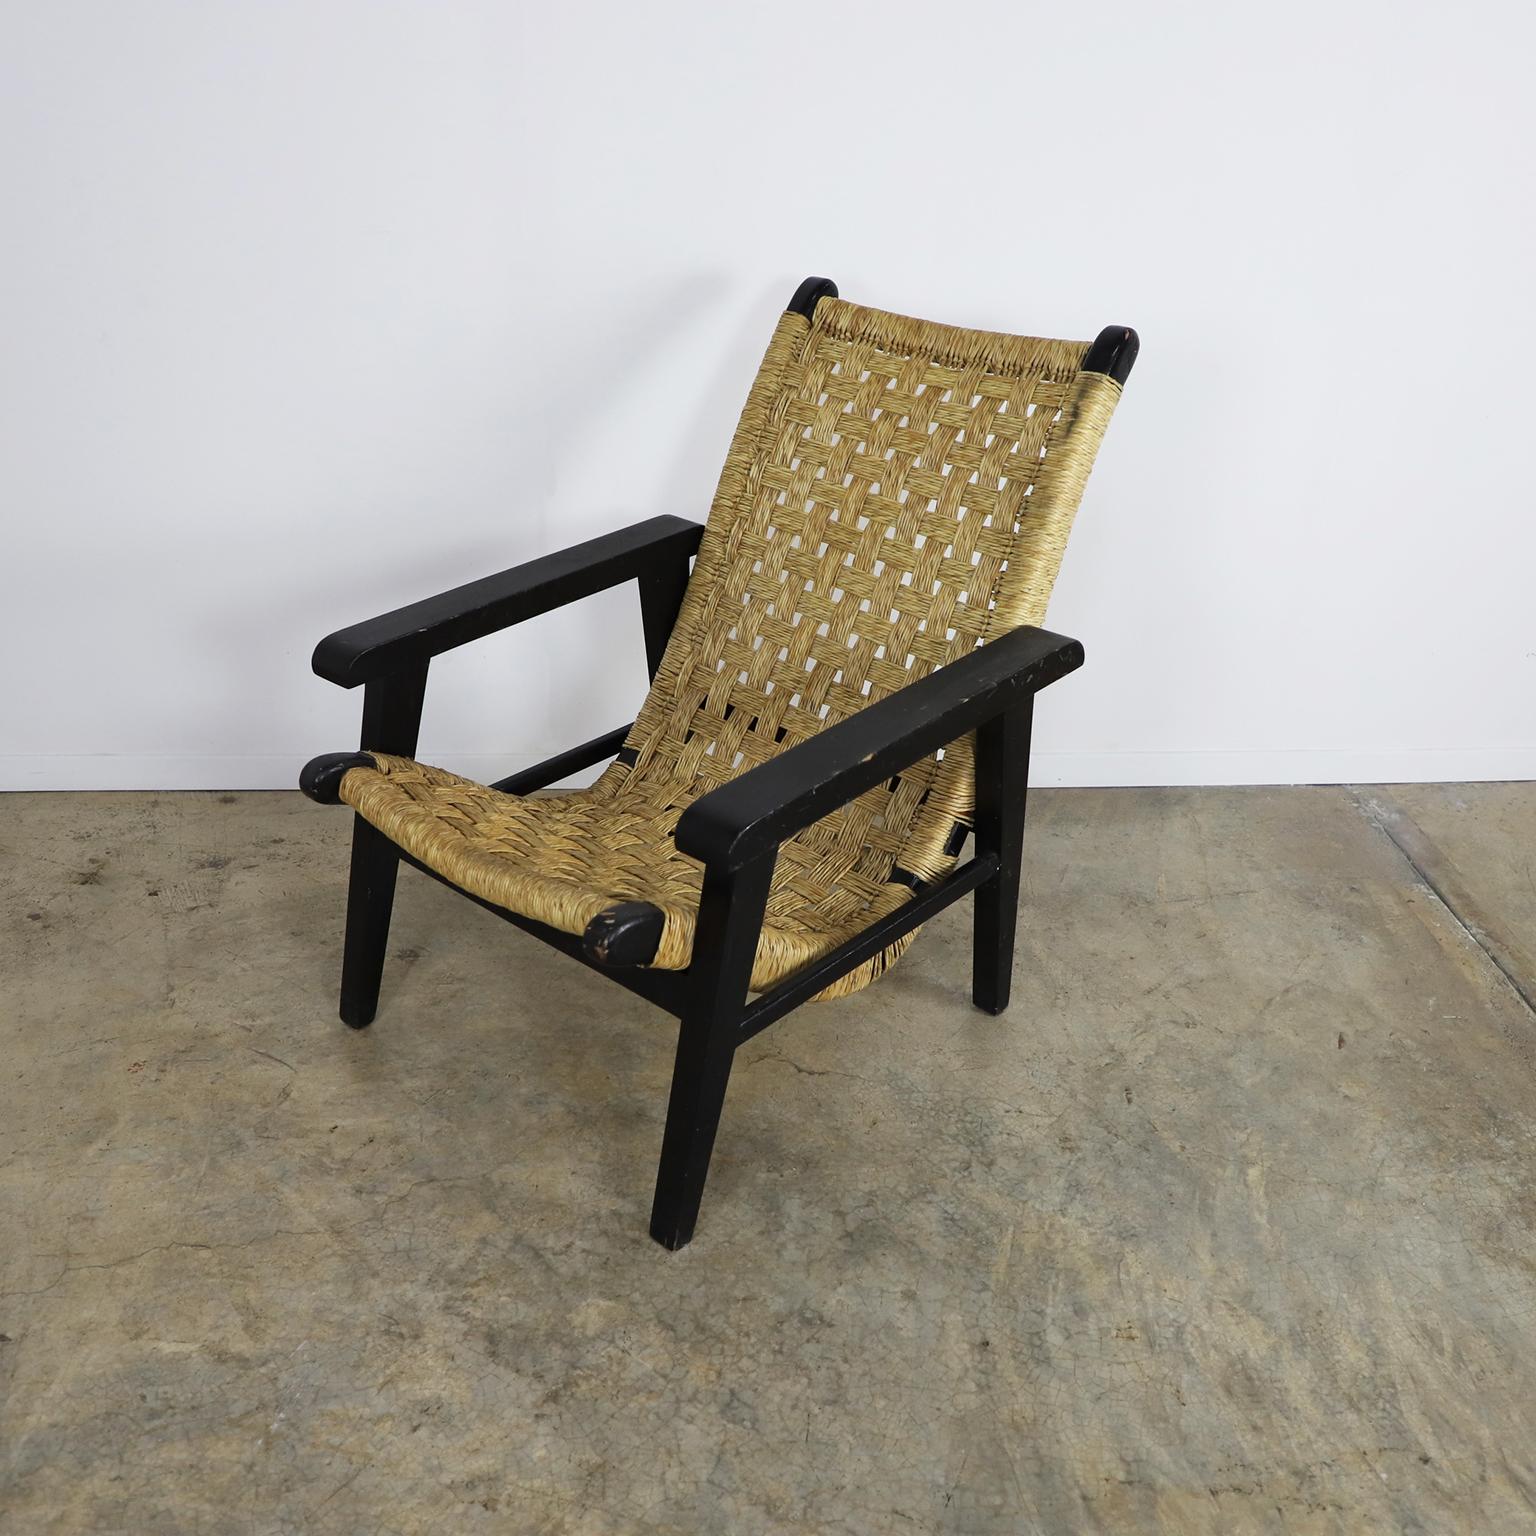 Wir bieten diesen mexikanischen San Miguelito Stuhl im Stil von Michael Van Beuren, ca. 1950 in Primavera Holz.